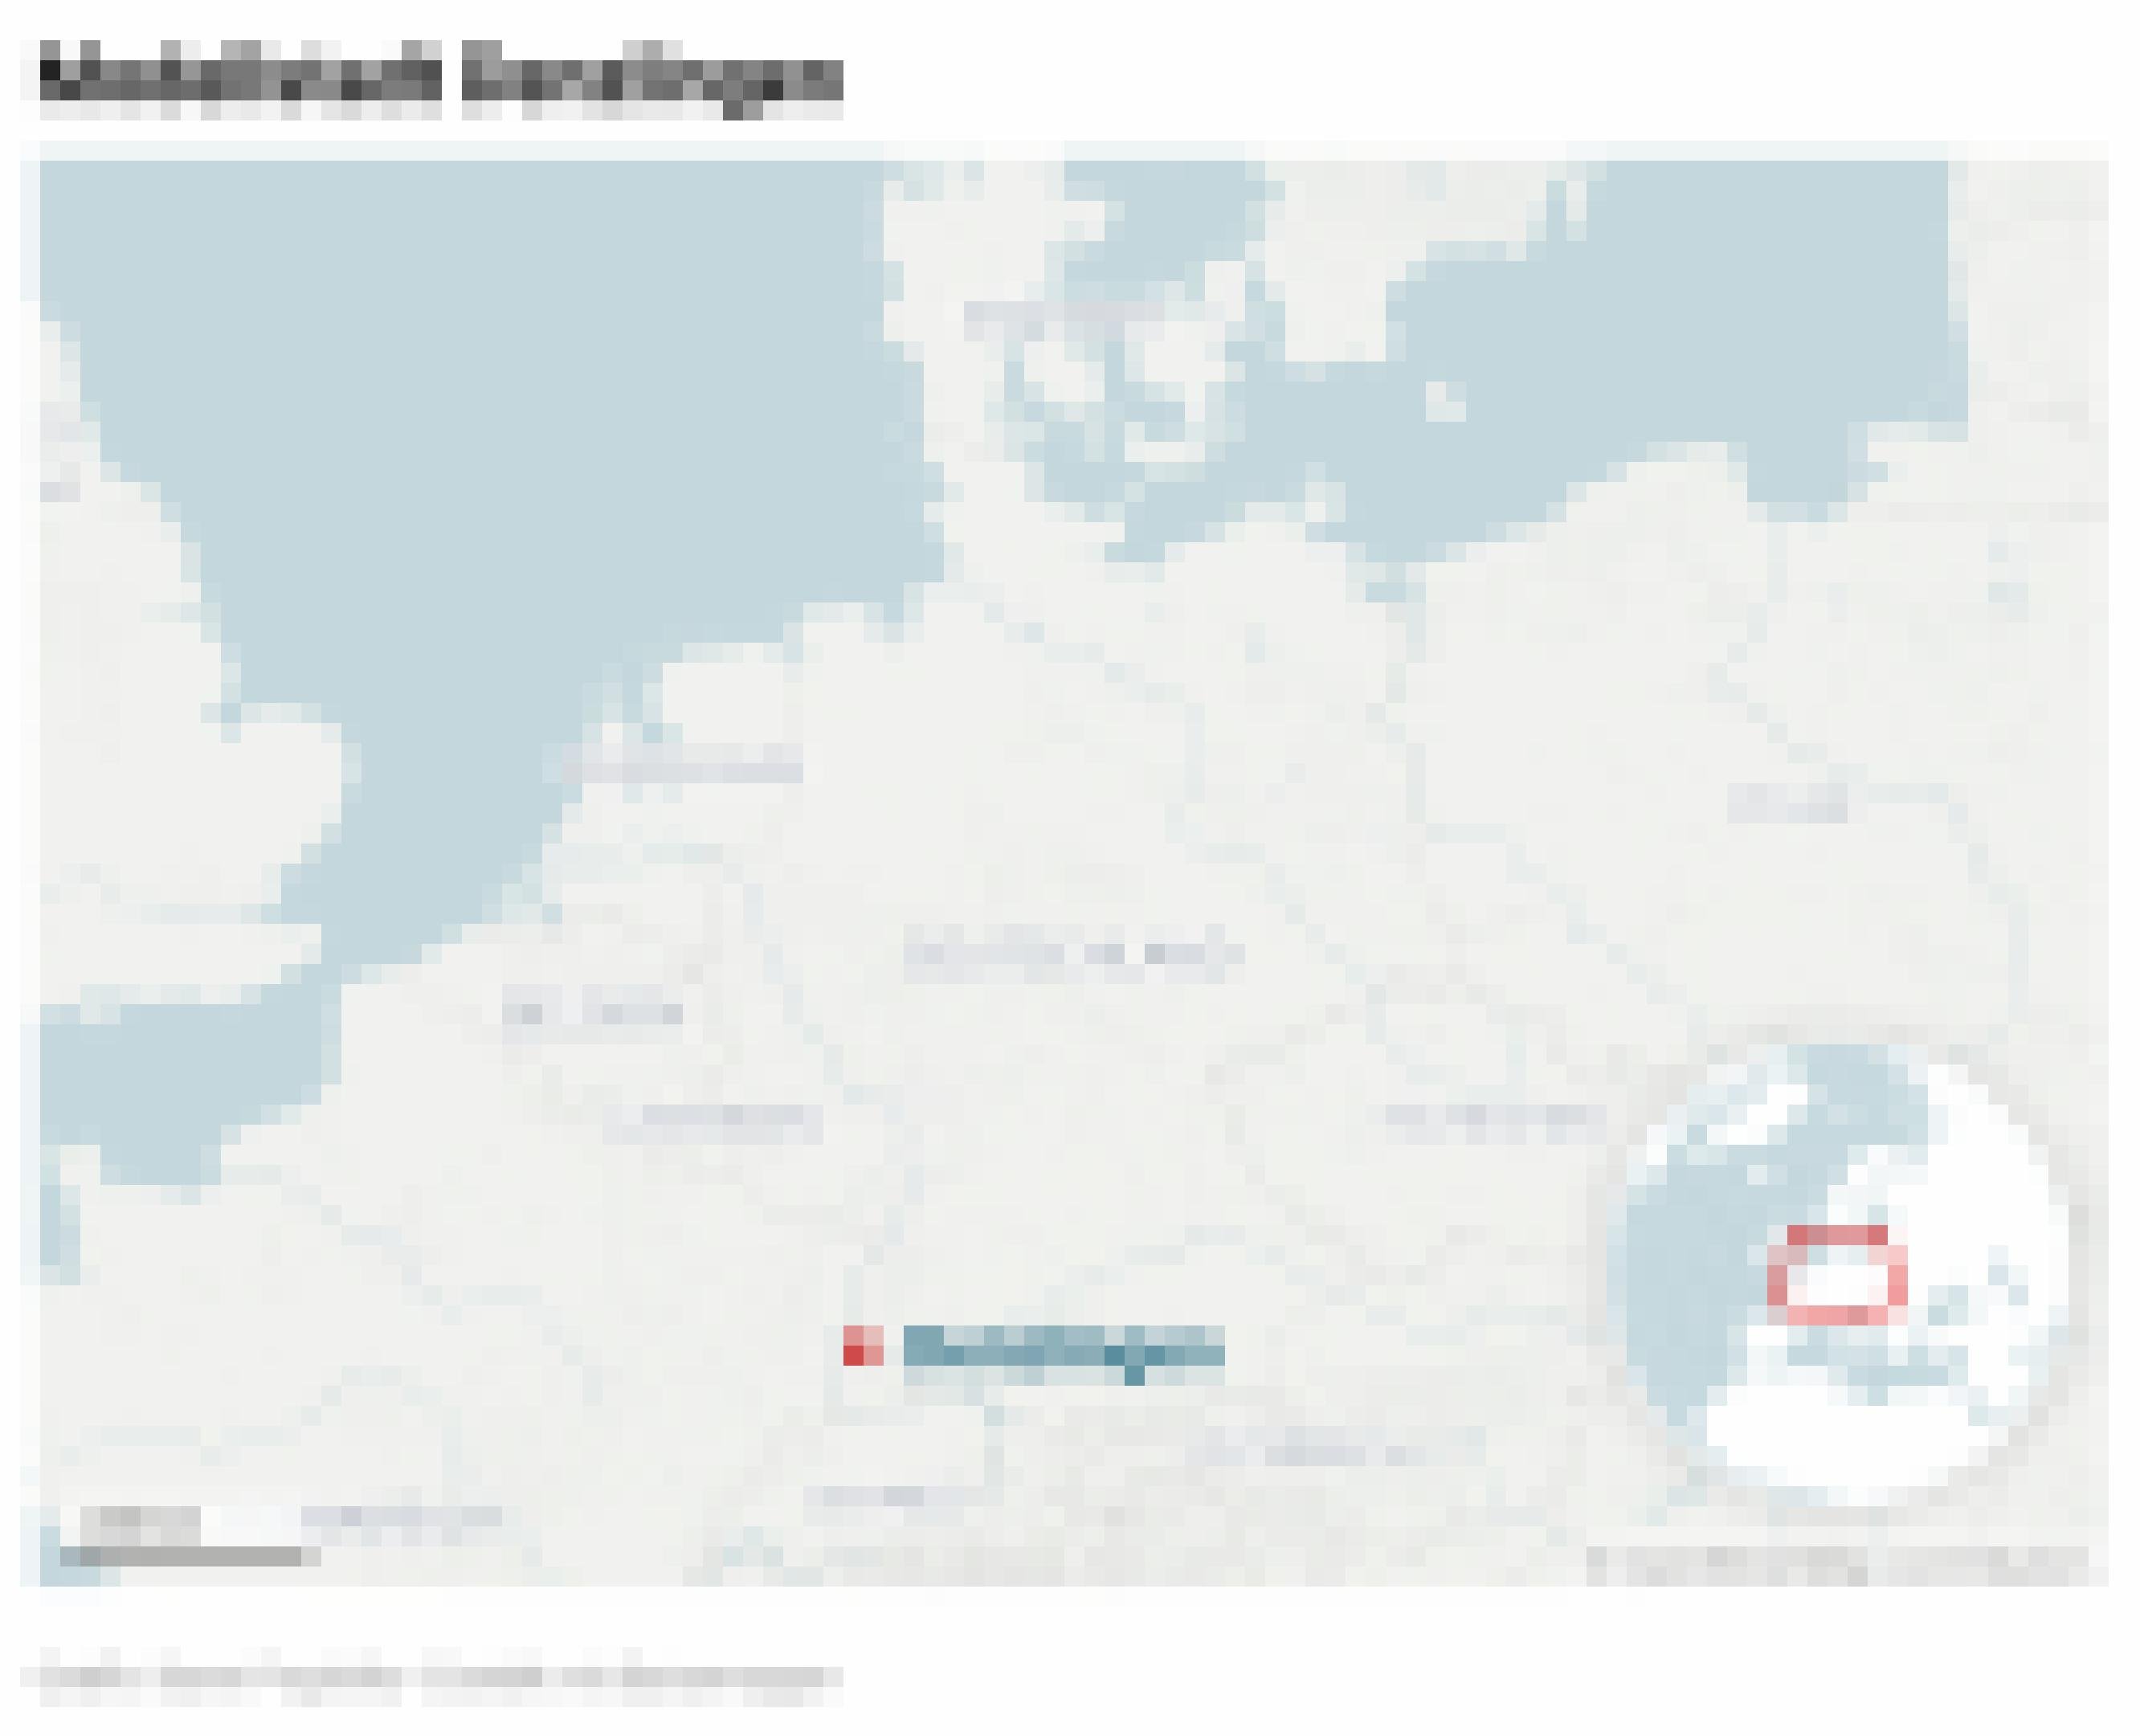 Landkarte zeigt Denzlingen in Süddeutschland